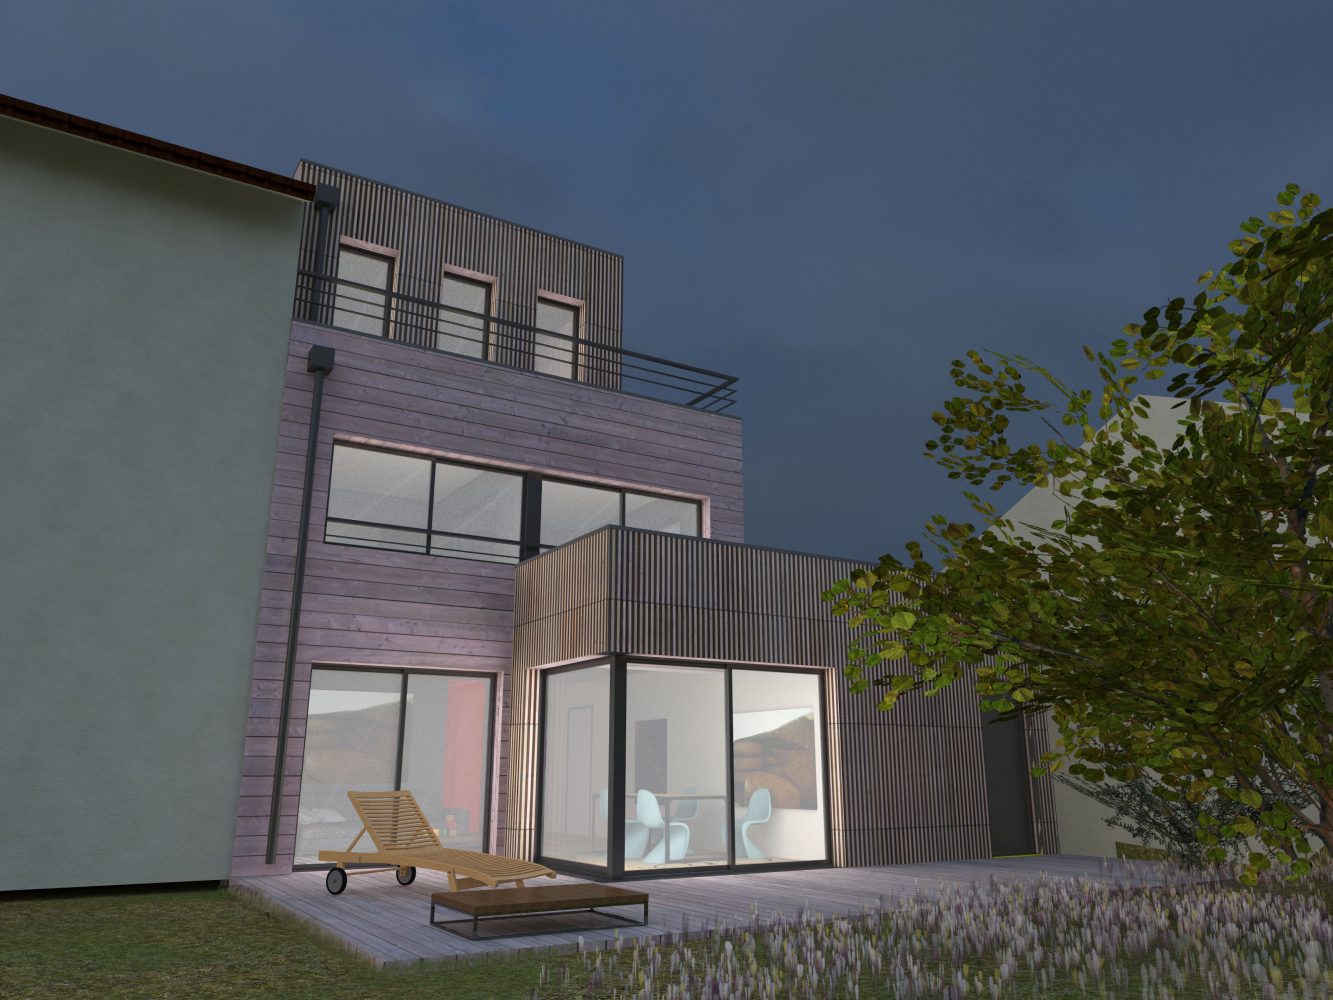 Philippe_Zerbib_Architecte_construction_maisons_ossature_bois_projet_maison-Vollaire-View 10_12